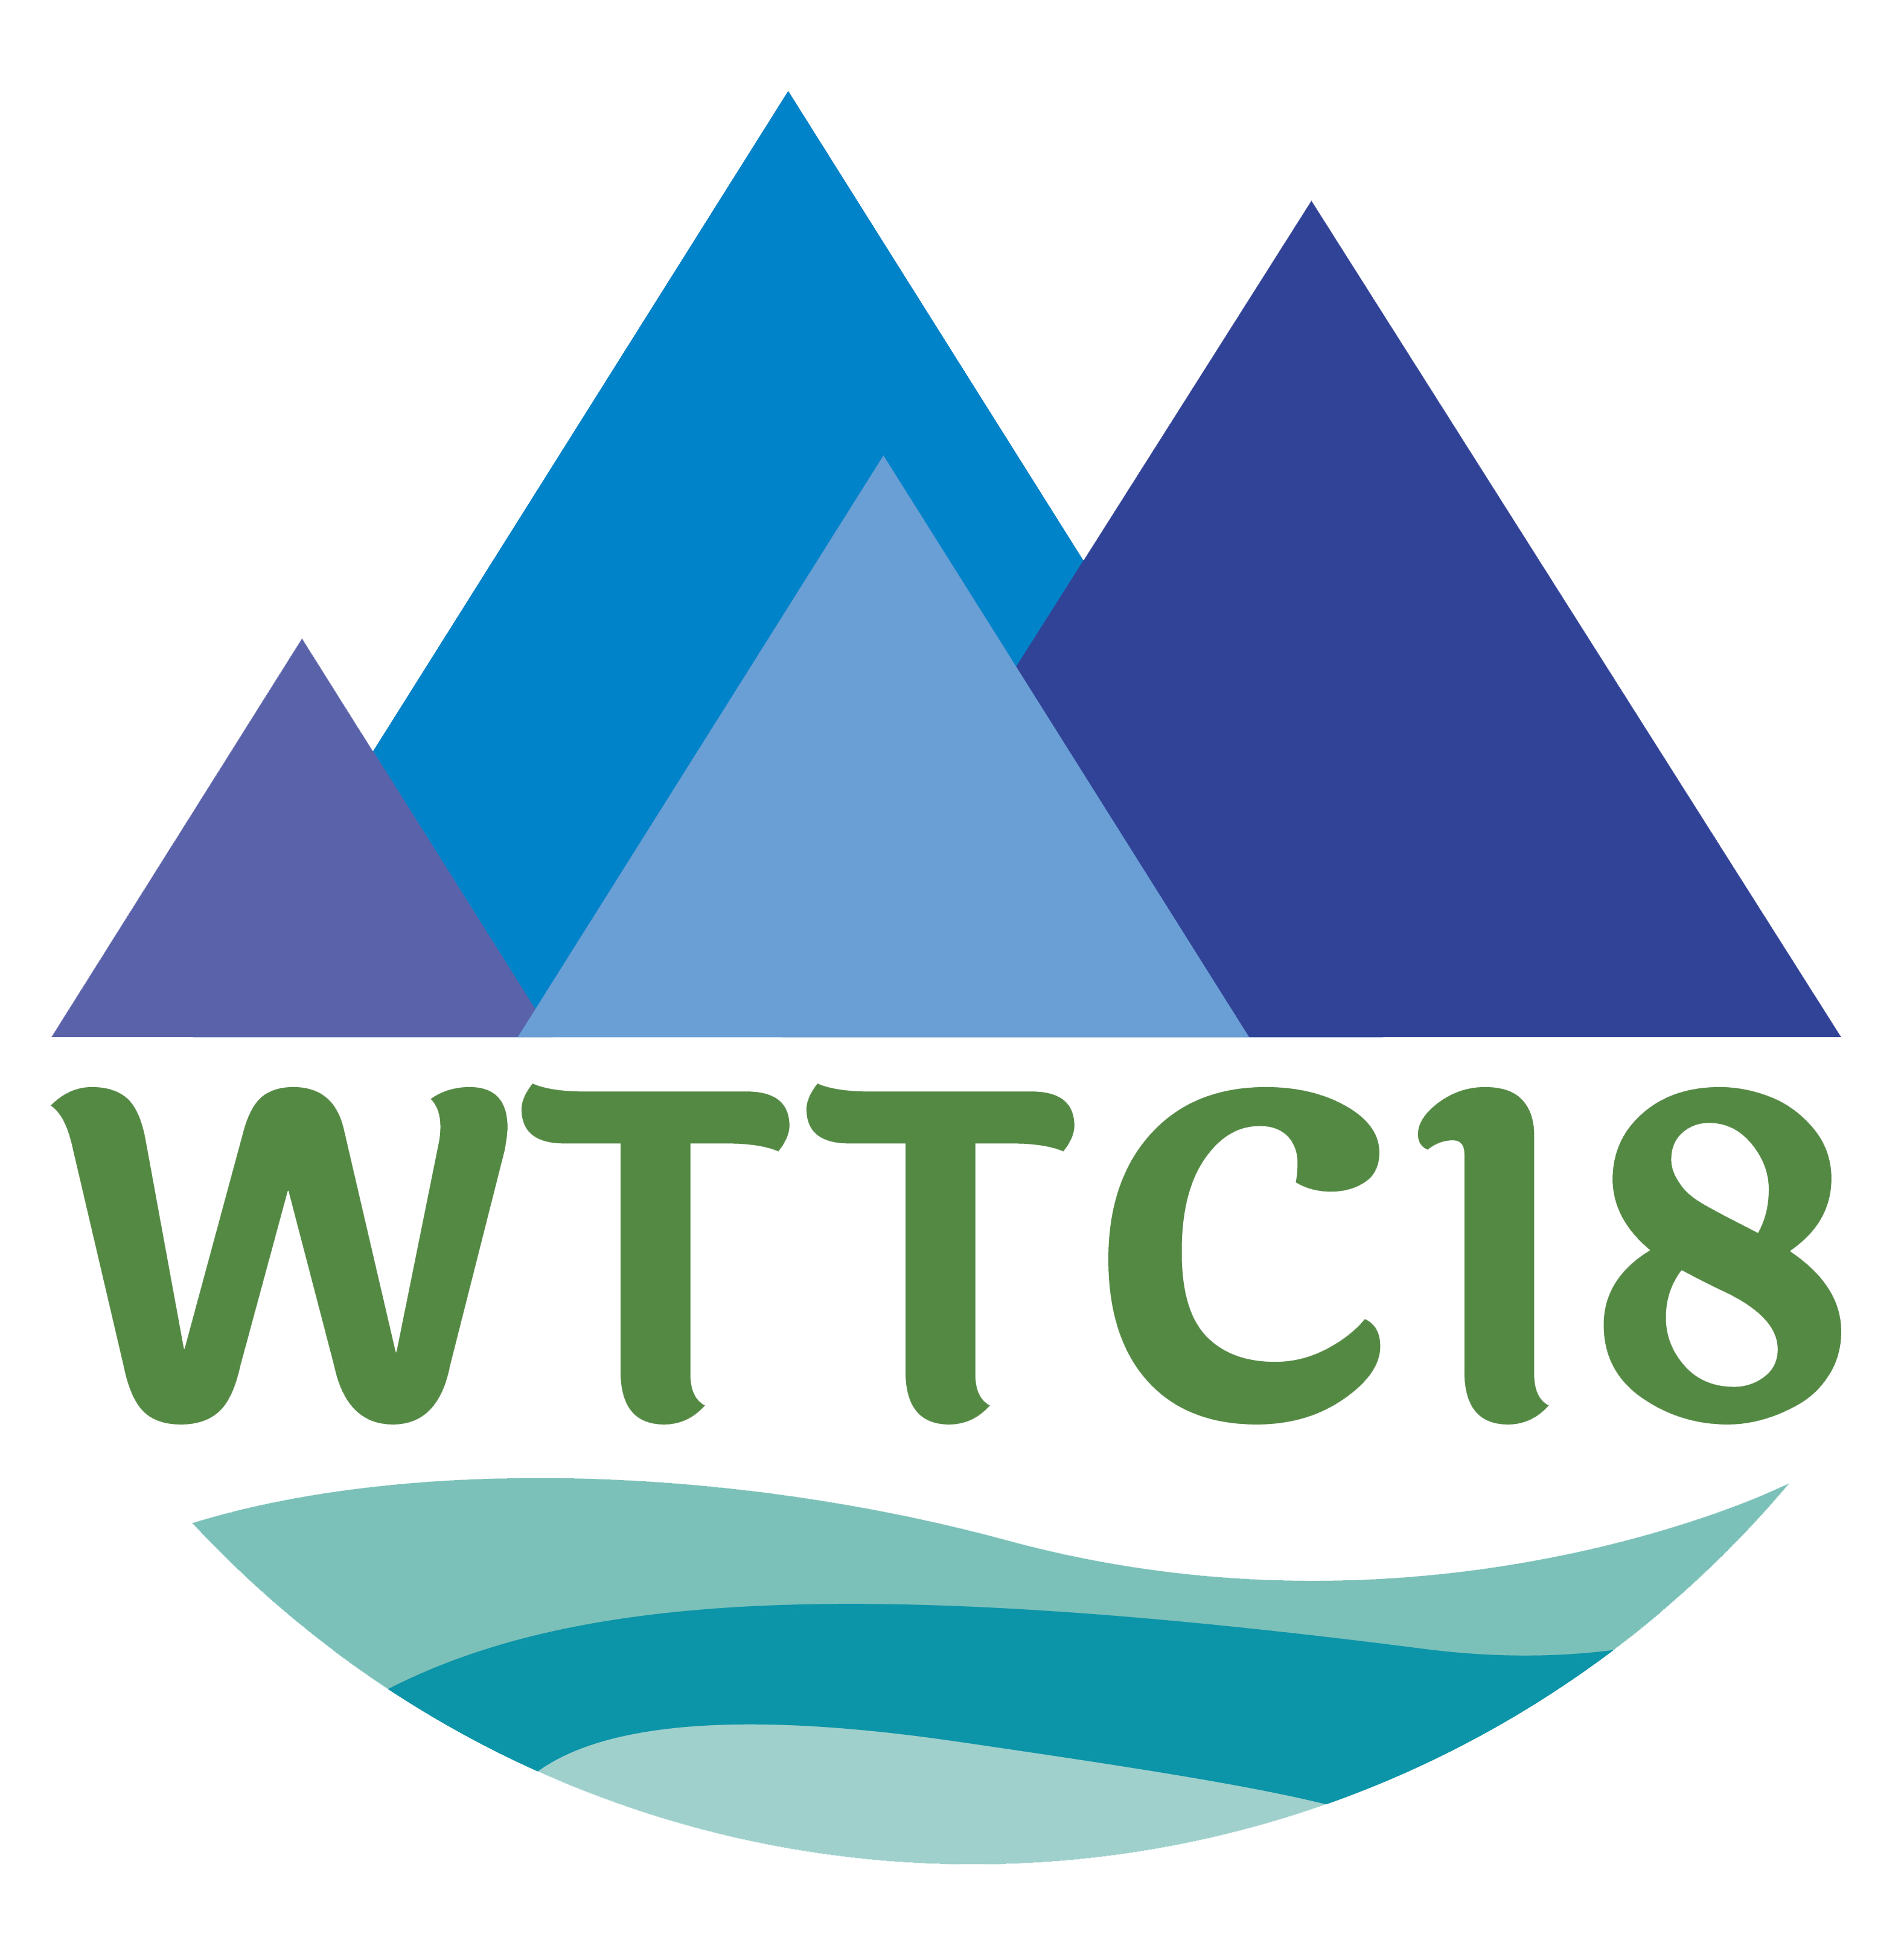 WTTC18 logo